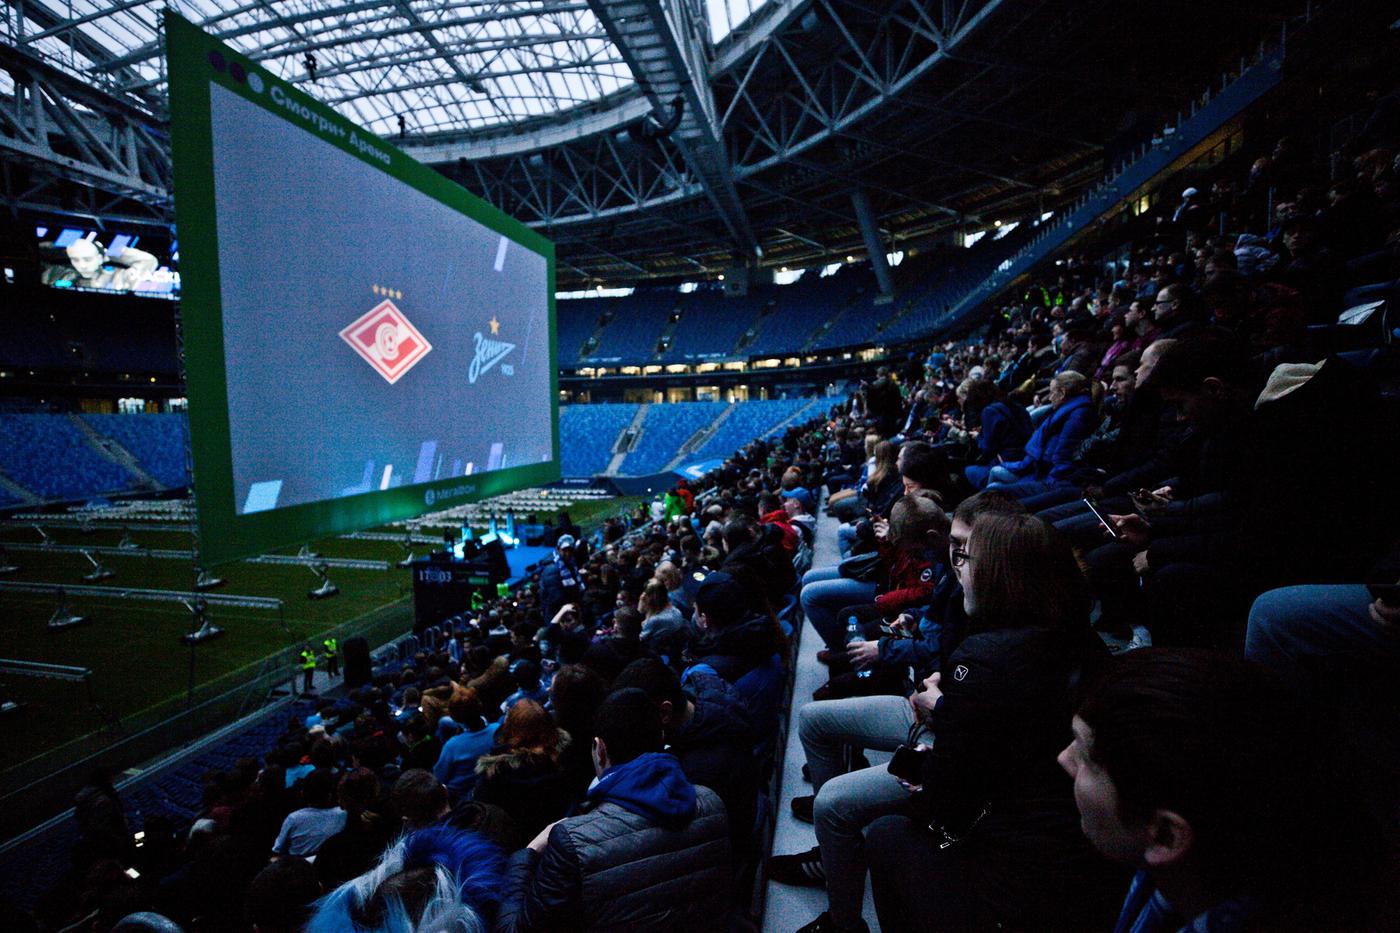 Бесплатные трансляции на клубном канале: новый «прорыв» в показе российского футбола - фото